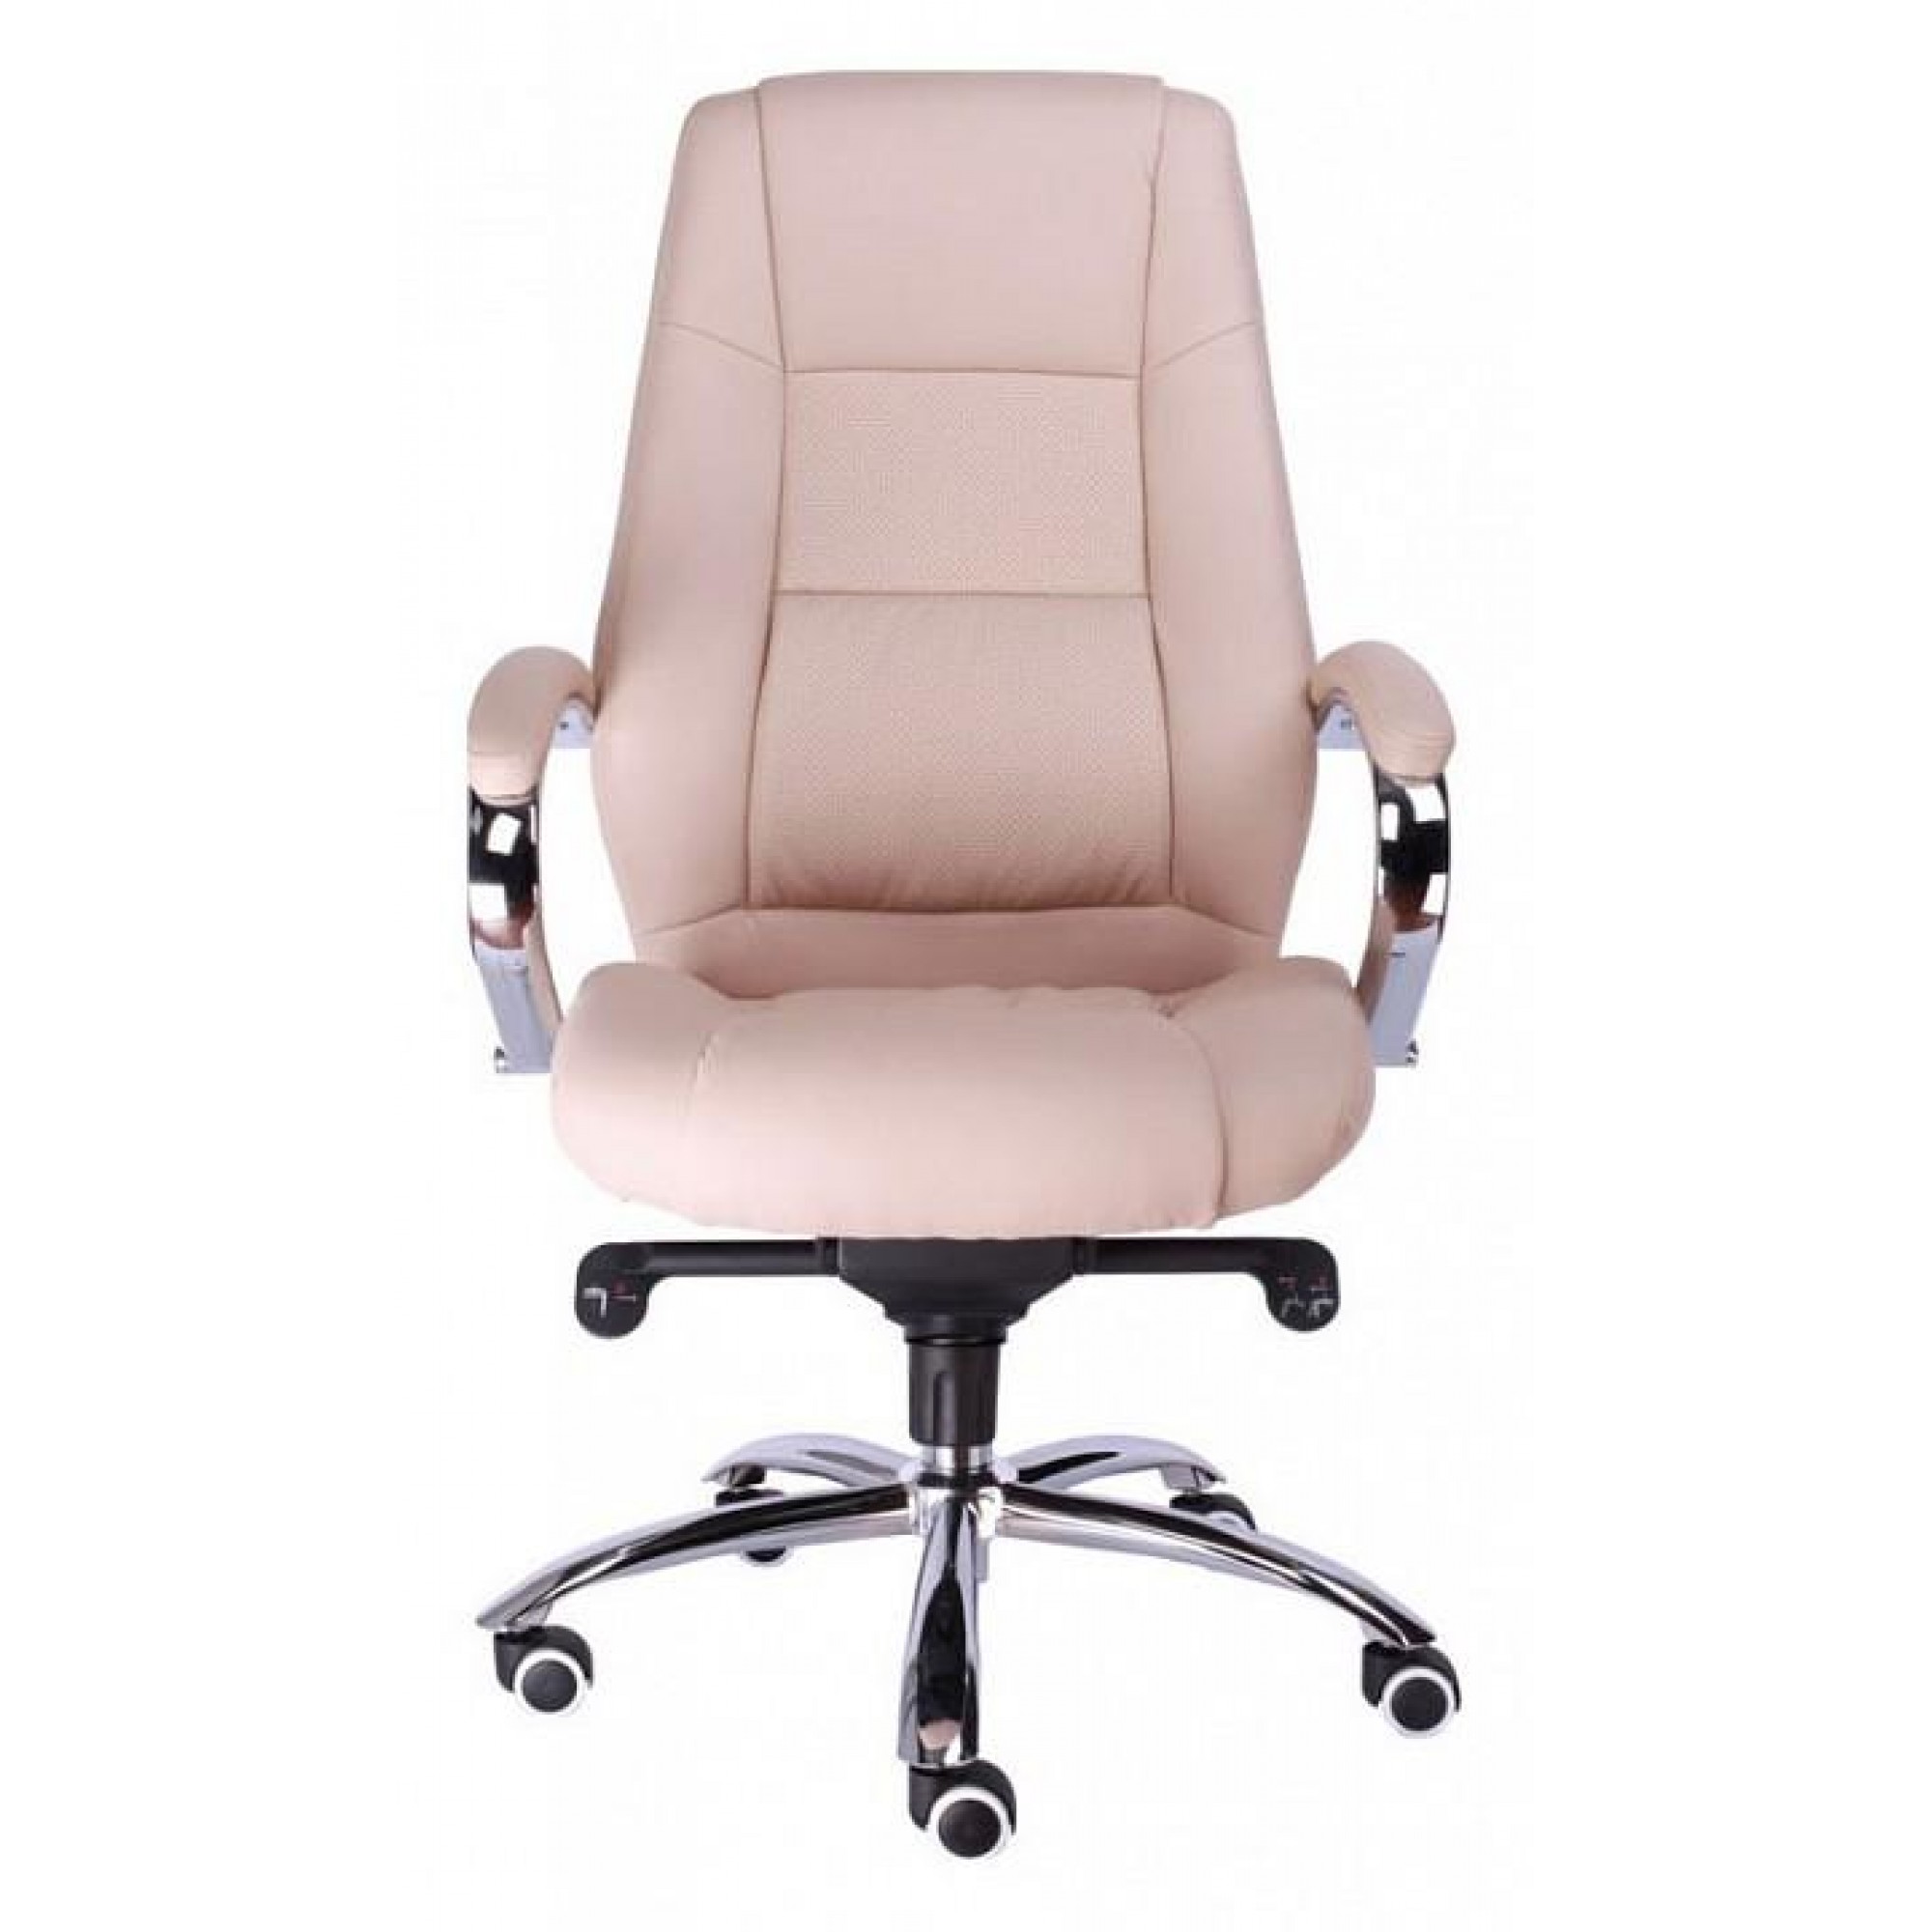 Кресло для руководителя Kron M EC-366 PU Beige    EVP_202502